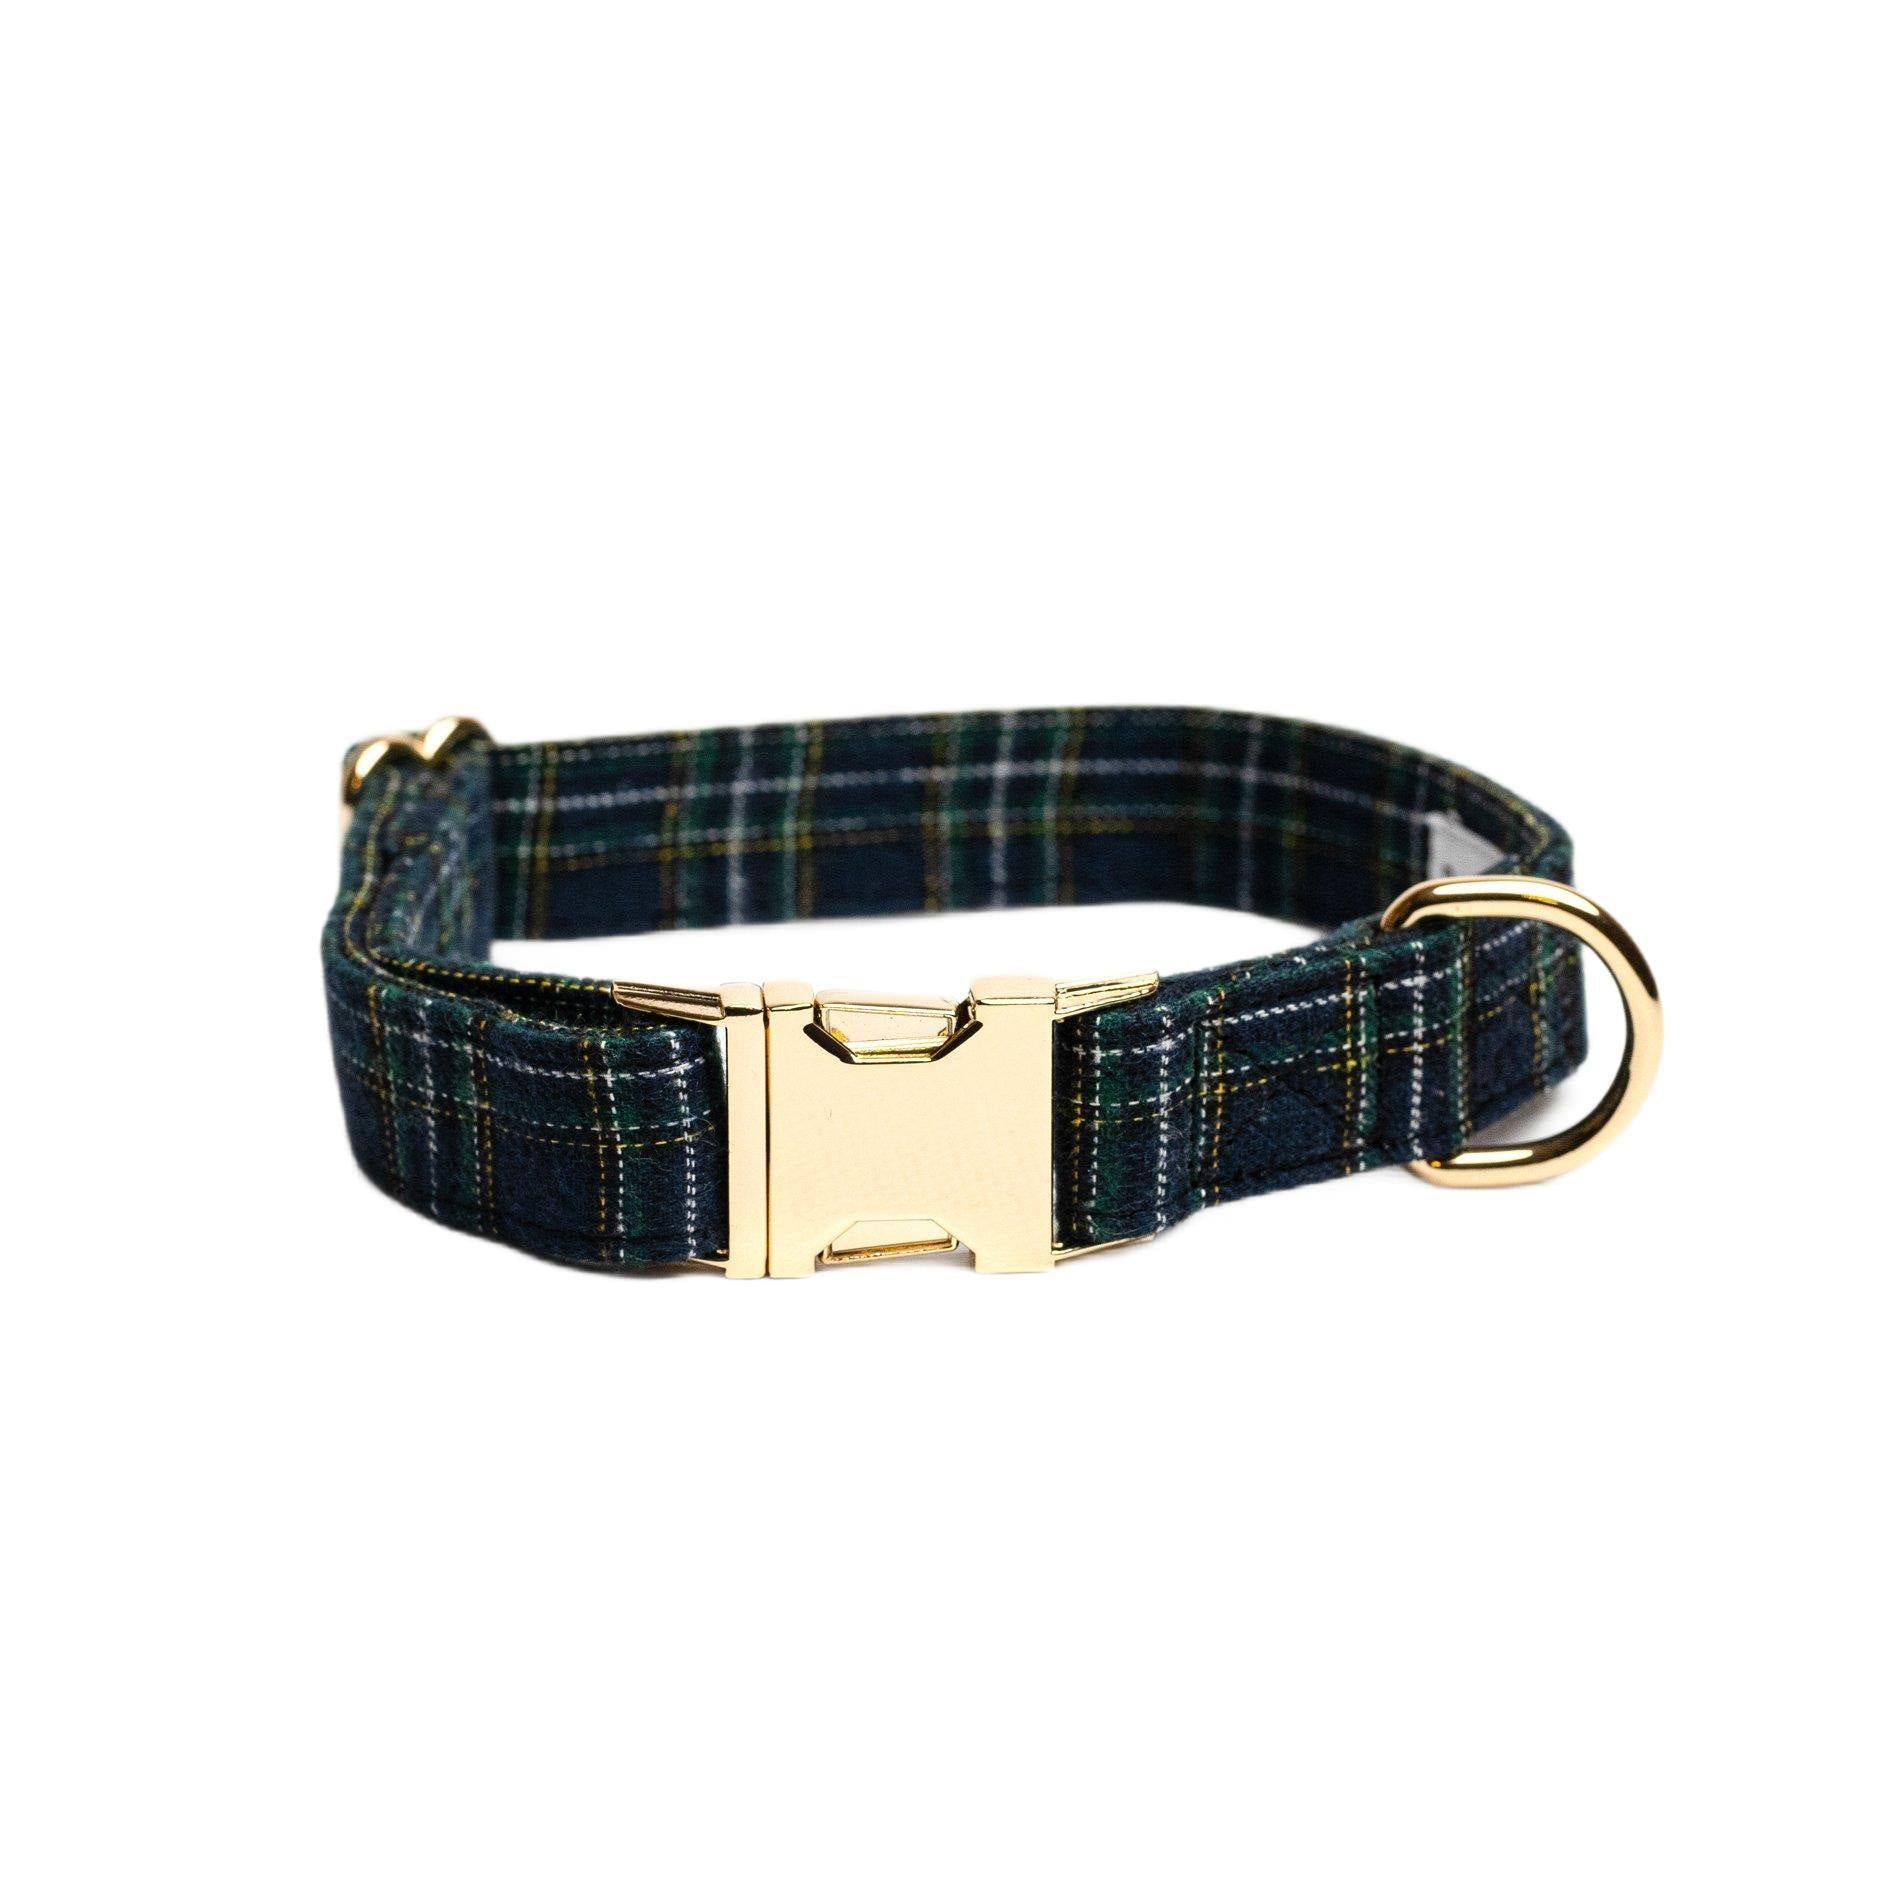 Collar Oxford - Tienda online collares y accesorios de diseño para perros Dog Models - Pet Peterson